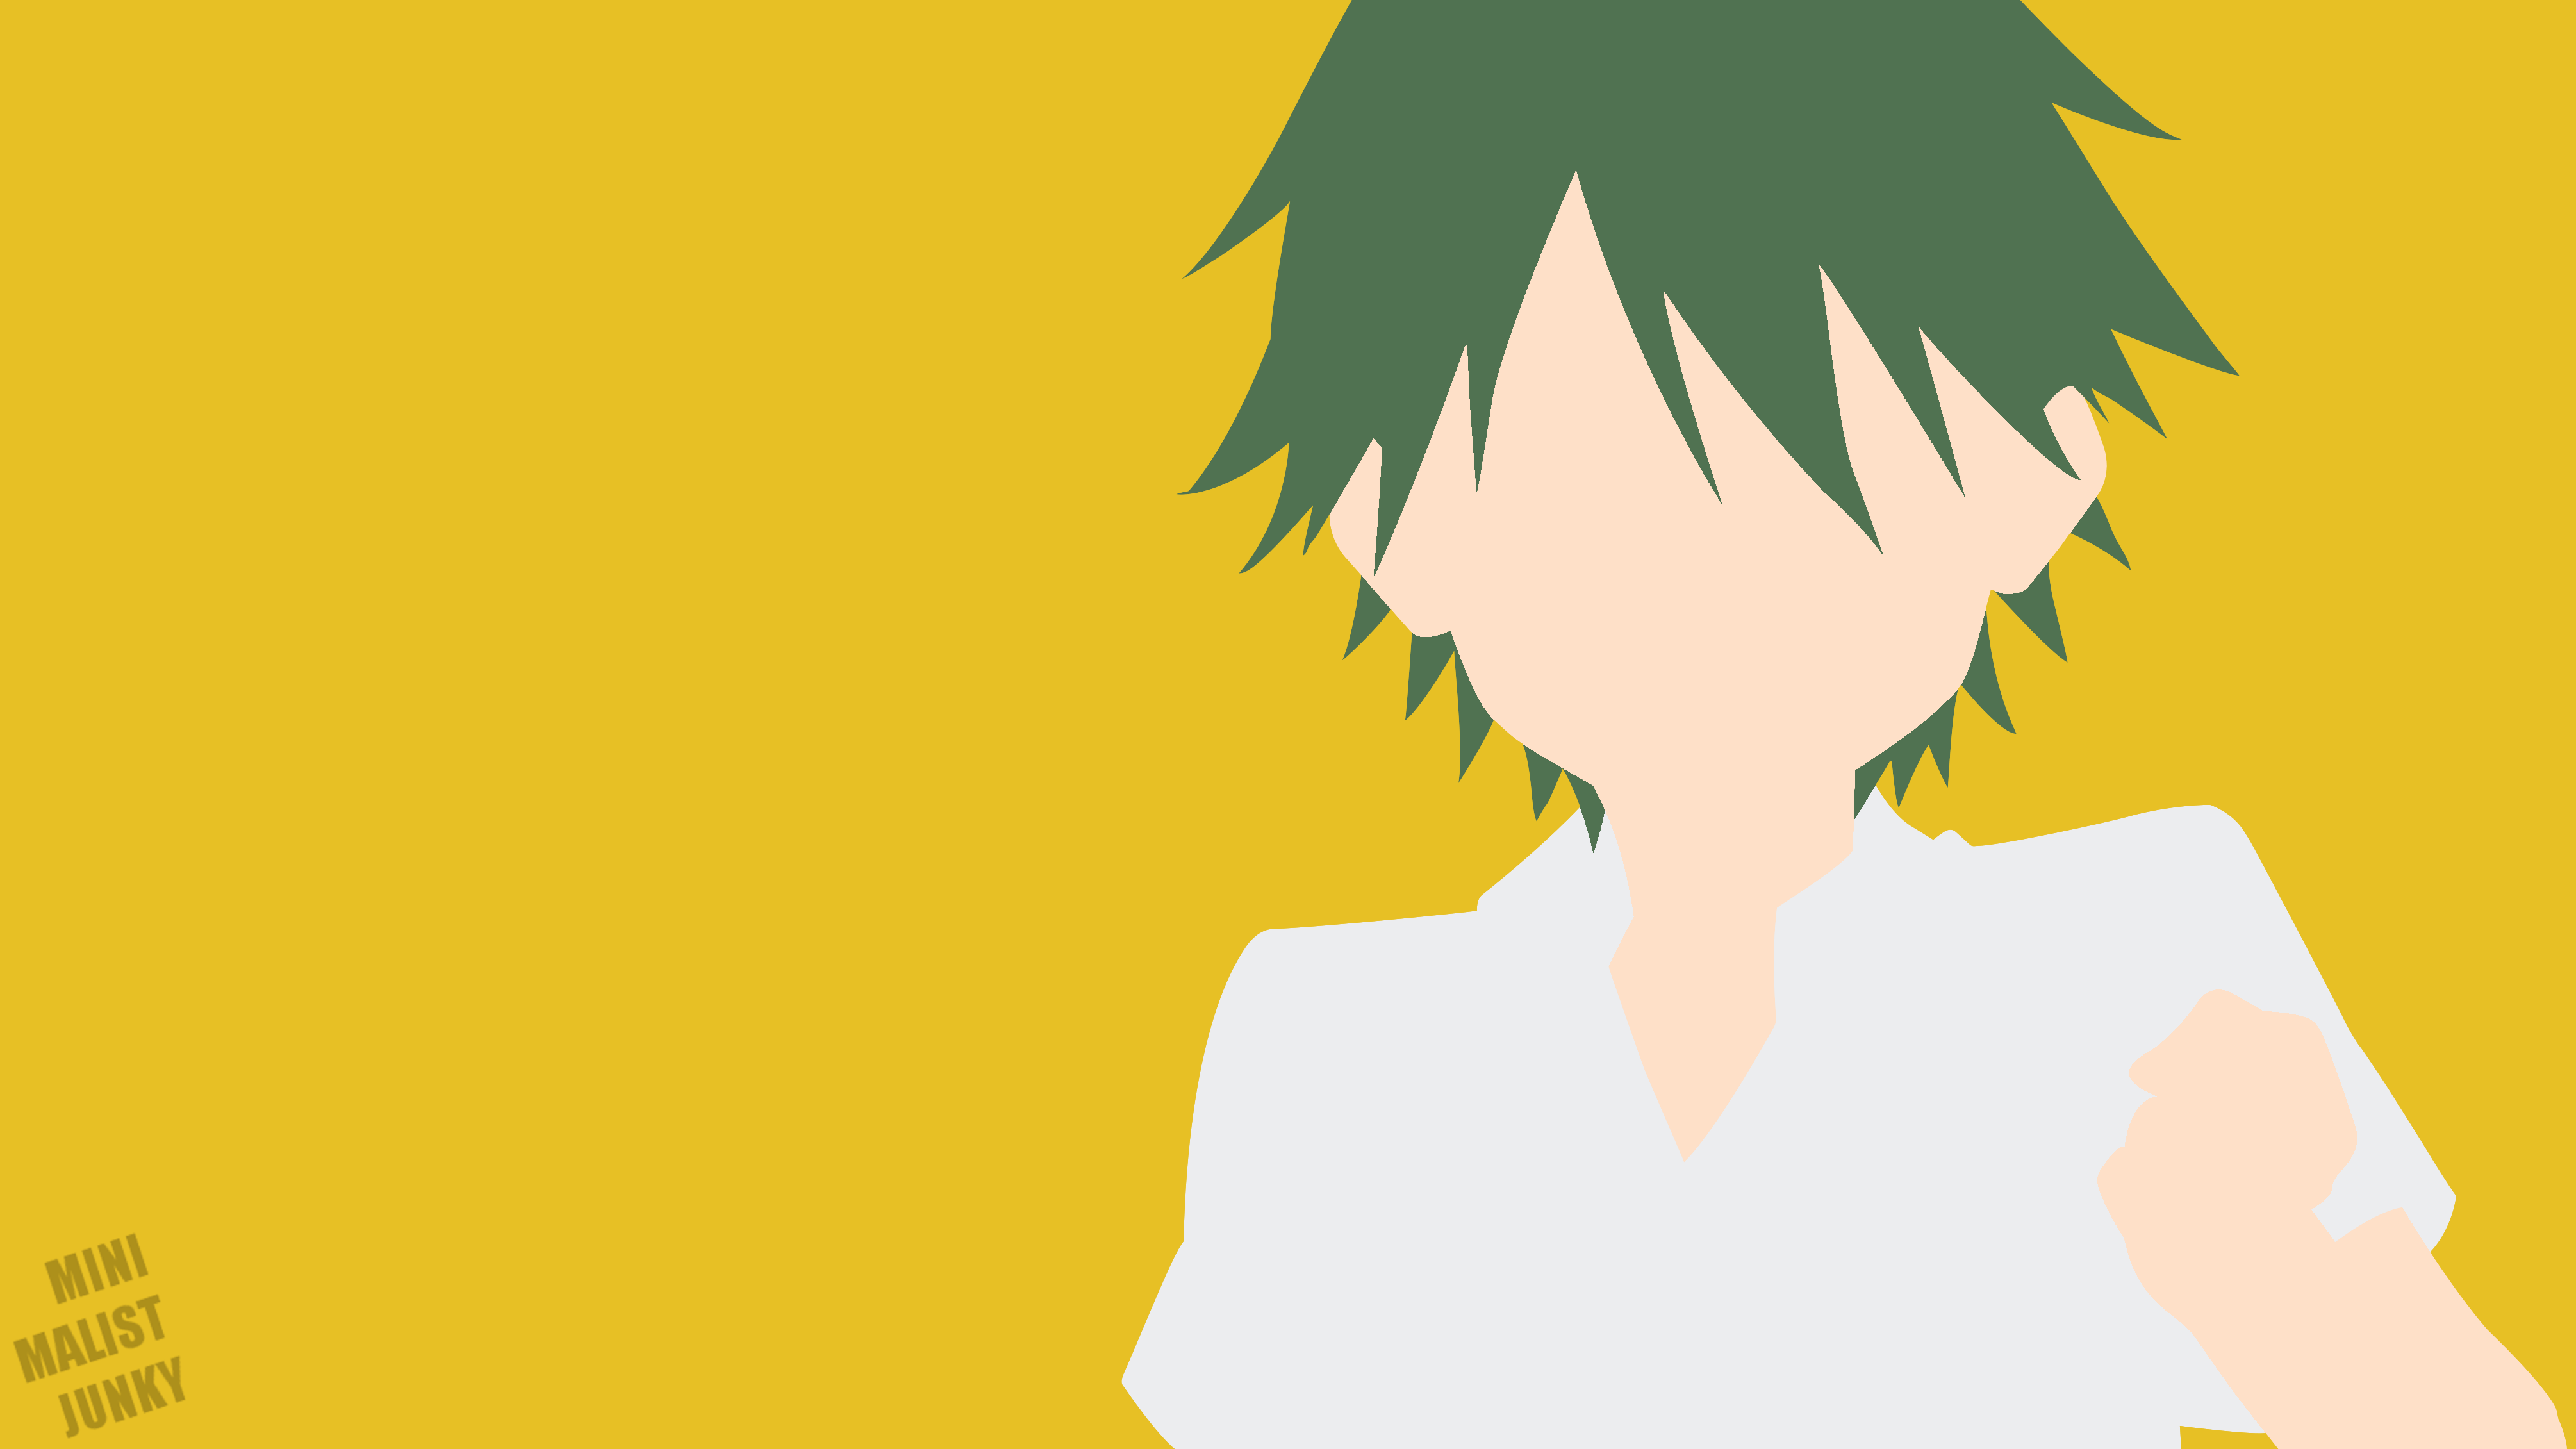 Anime 4020x2261 Kouyou Akizuki minimalism simple background anime boys MinimalistJunky BLEND-S